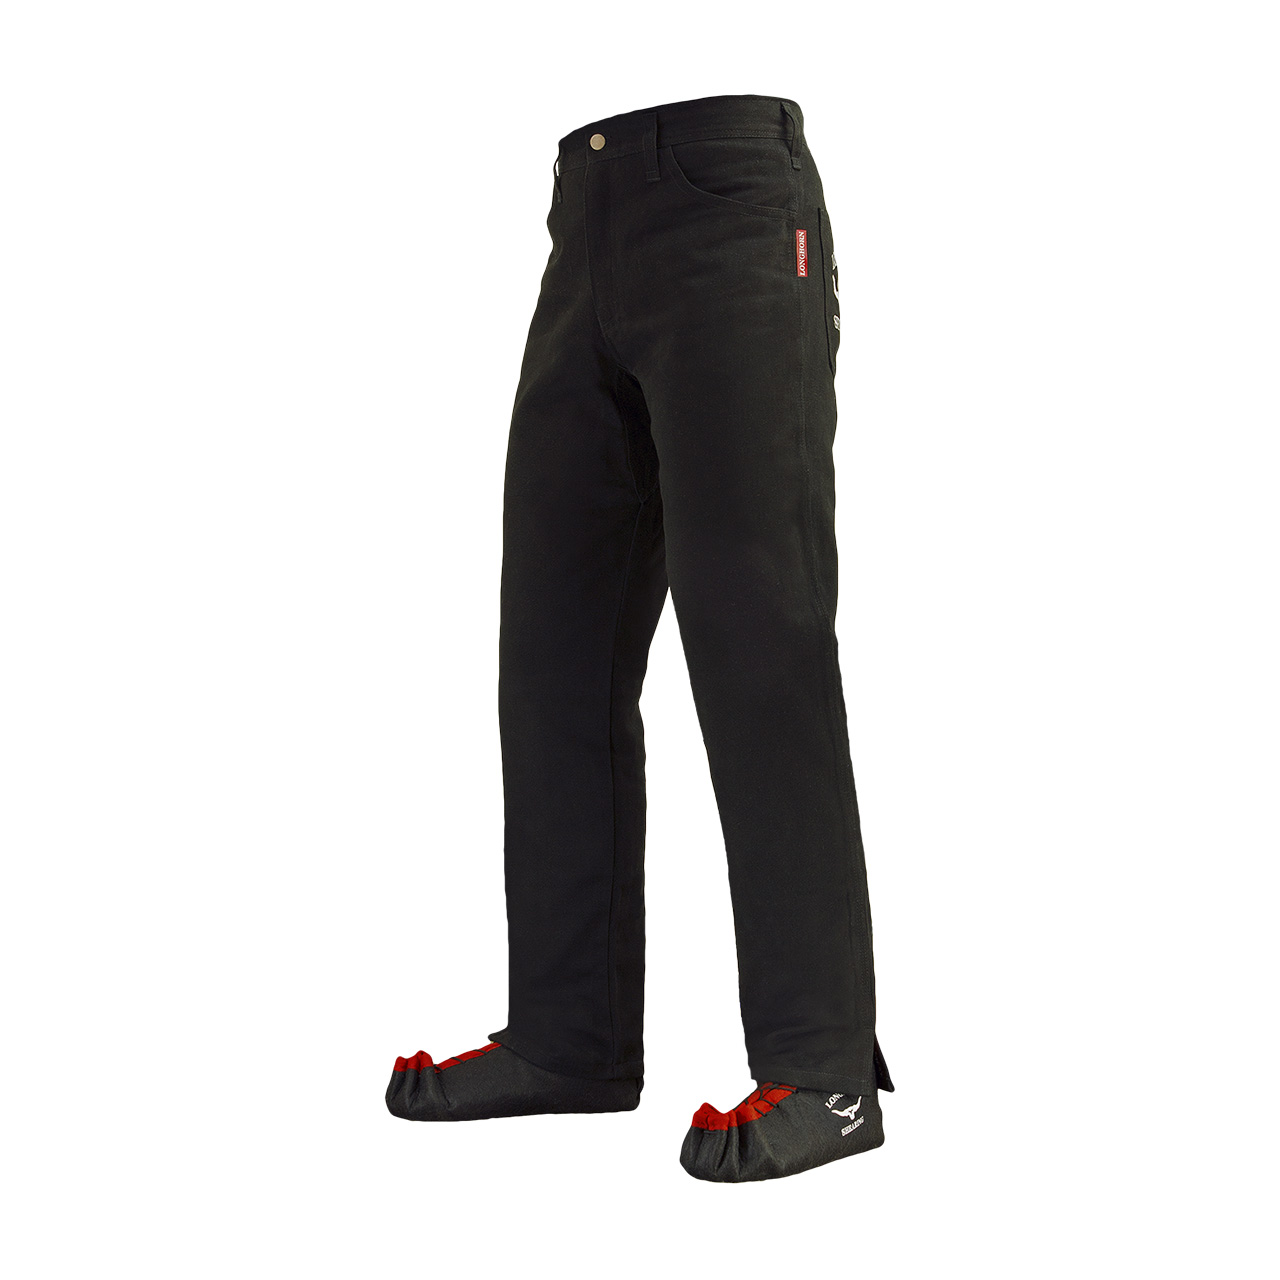 Longhorn™ kalhoty pro střihače ovcí s 2 předními kapsami velikost Slim 29/31 (3 1/2)